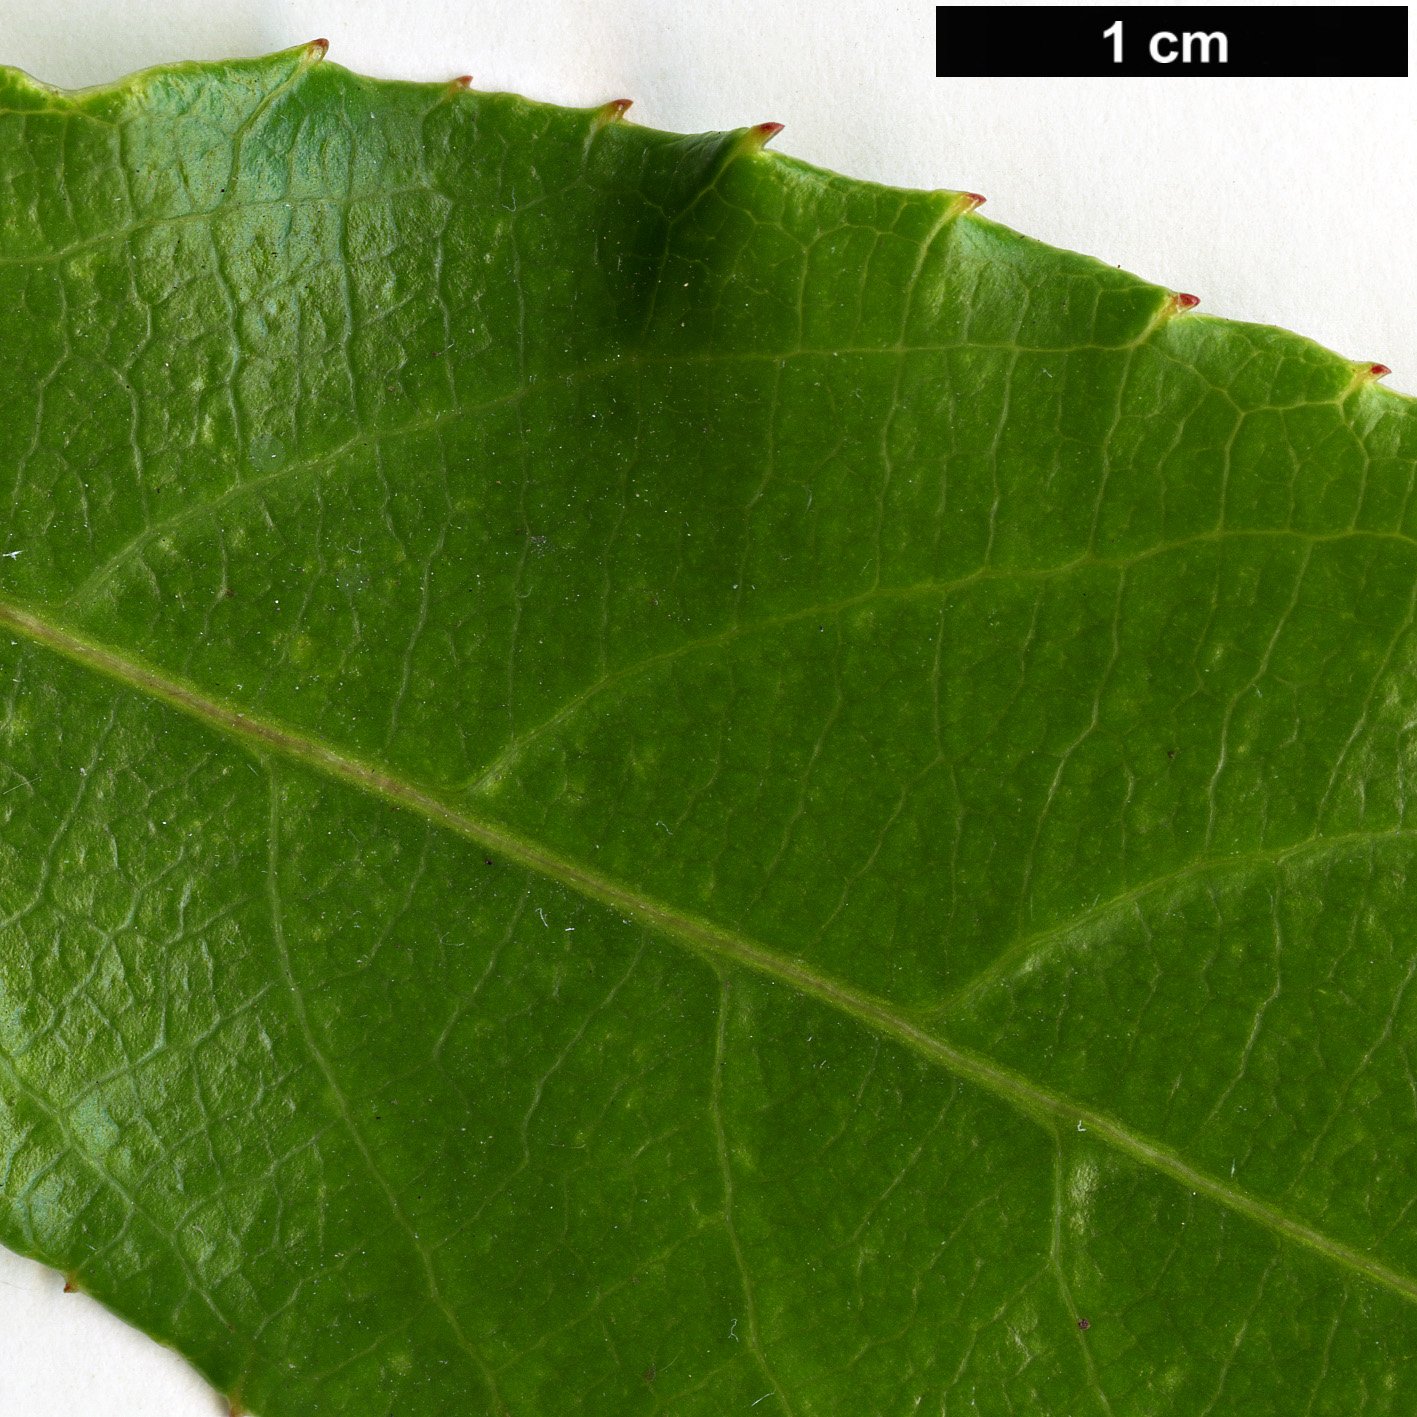 High resolution image: Family: Actinidiaceae - Genus: Actinidia - Taxon: rubricaulis - SpeciesSub: var. coriacea